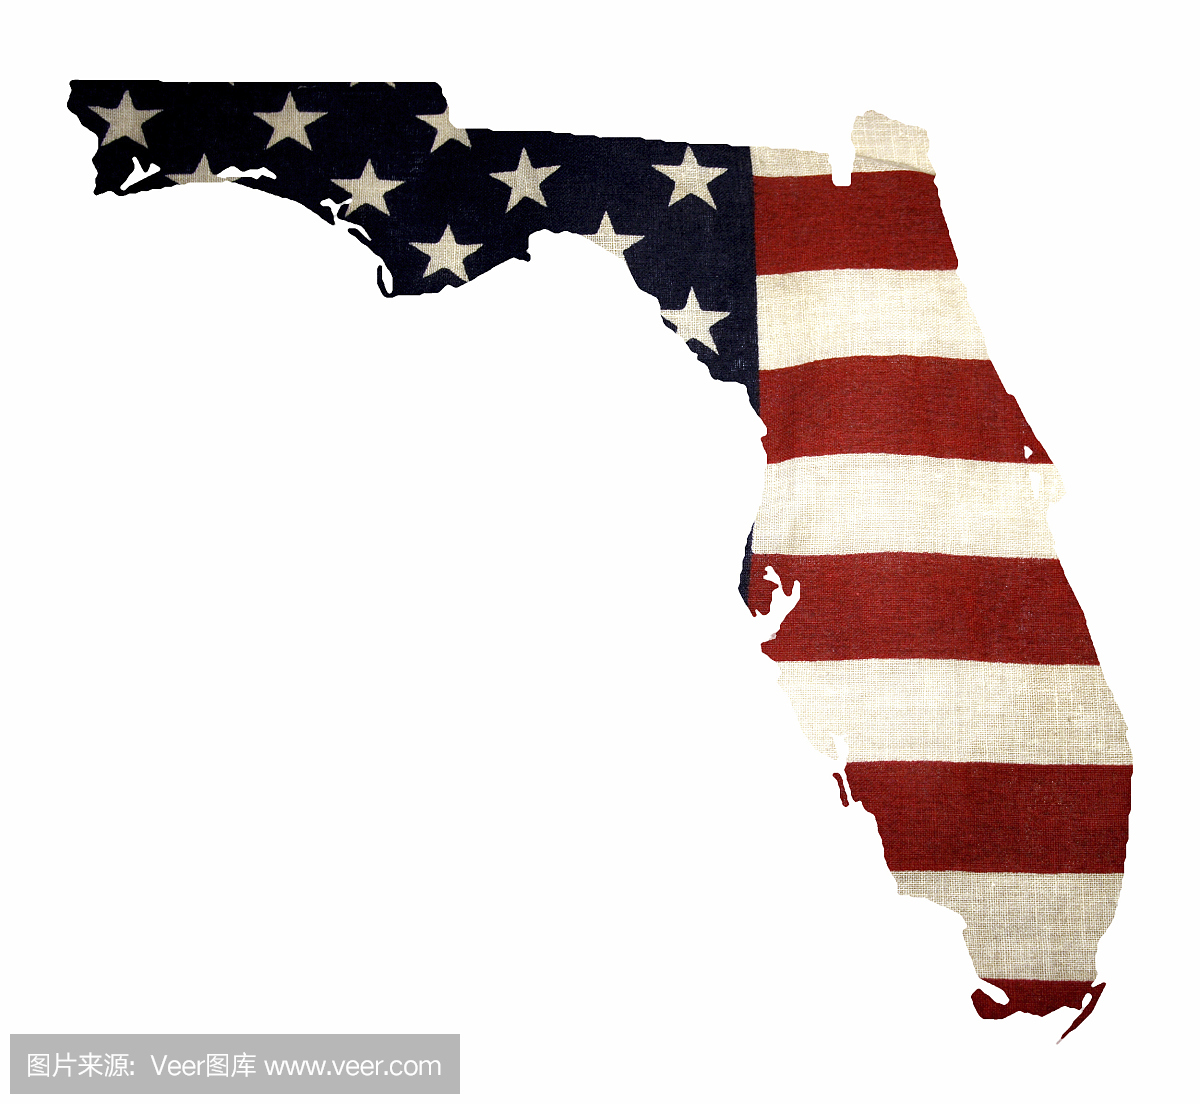 佛罗里达州与美国国旗被隔绝在白色的地图